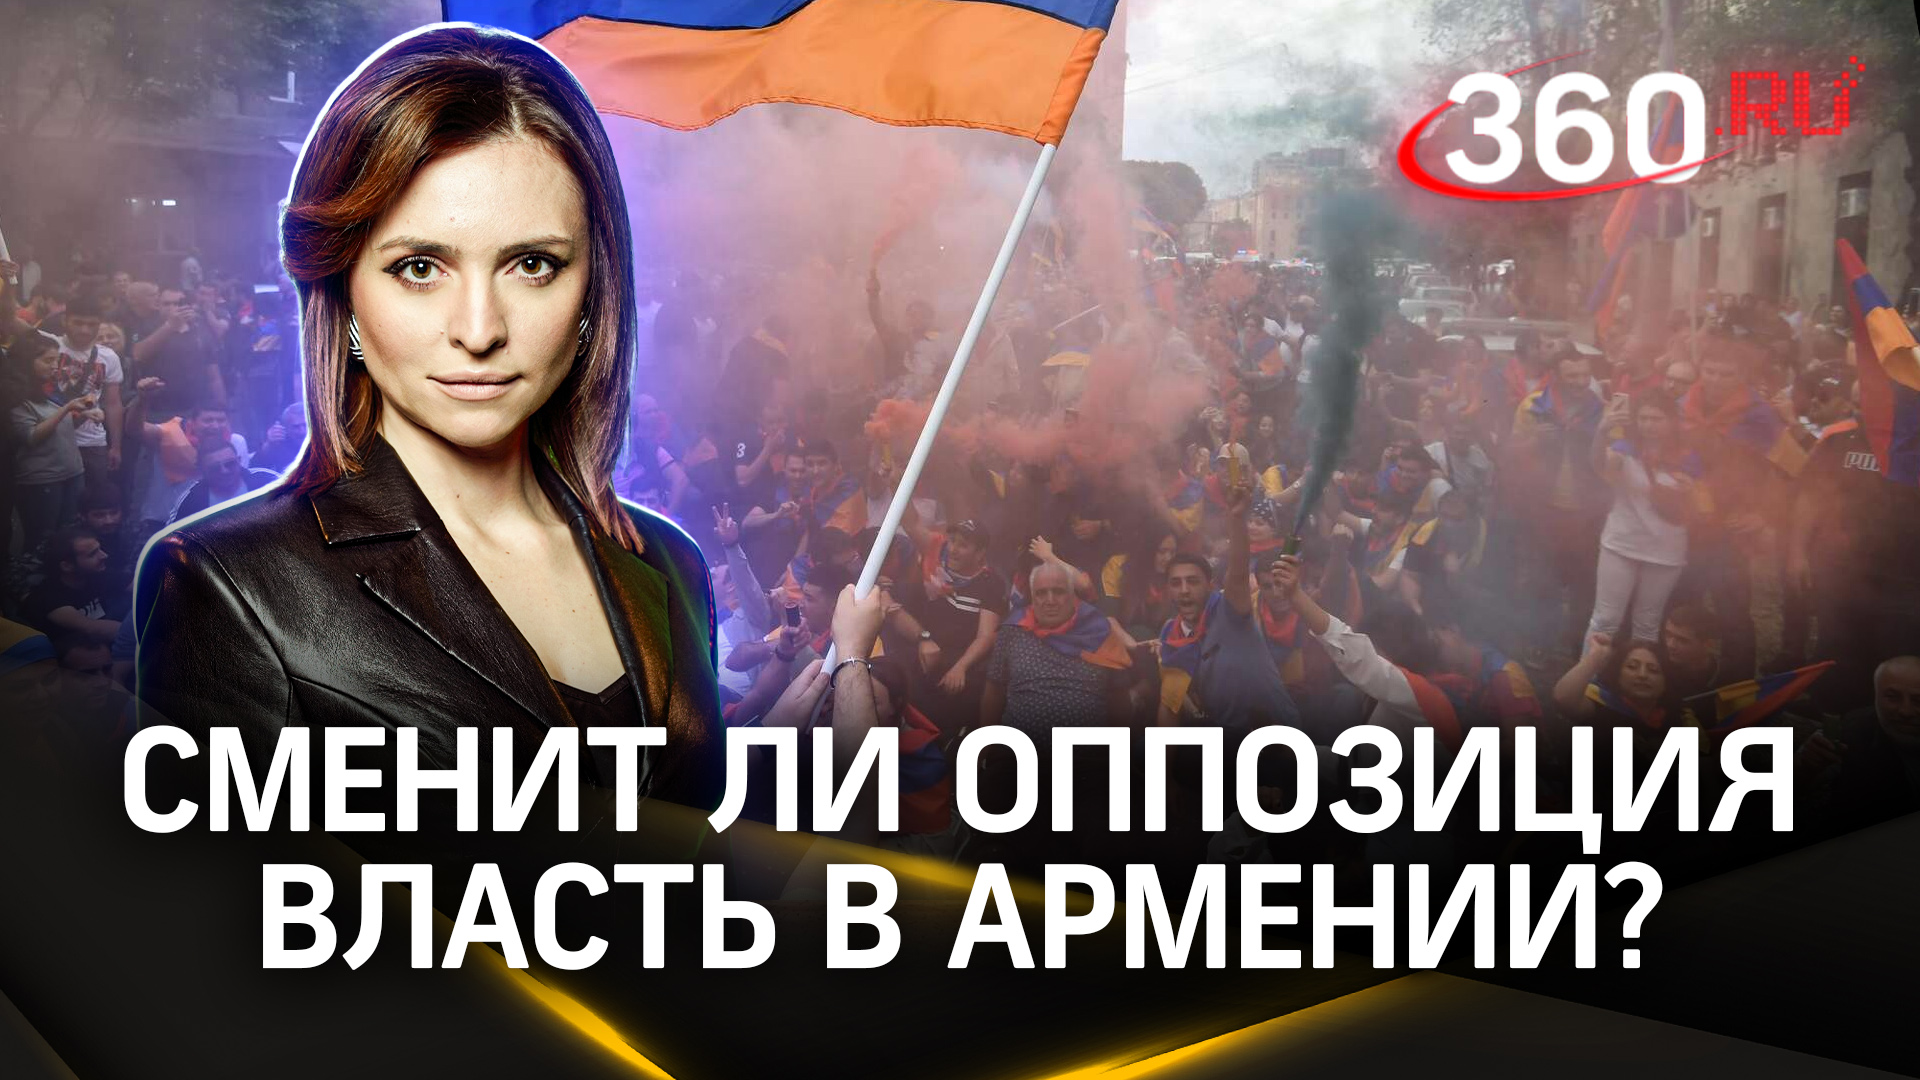 Удастся ли оппозиции сменить власть в Армении? Екатерина Малашенко